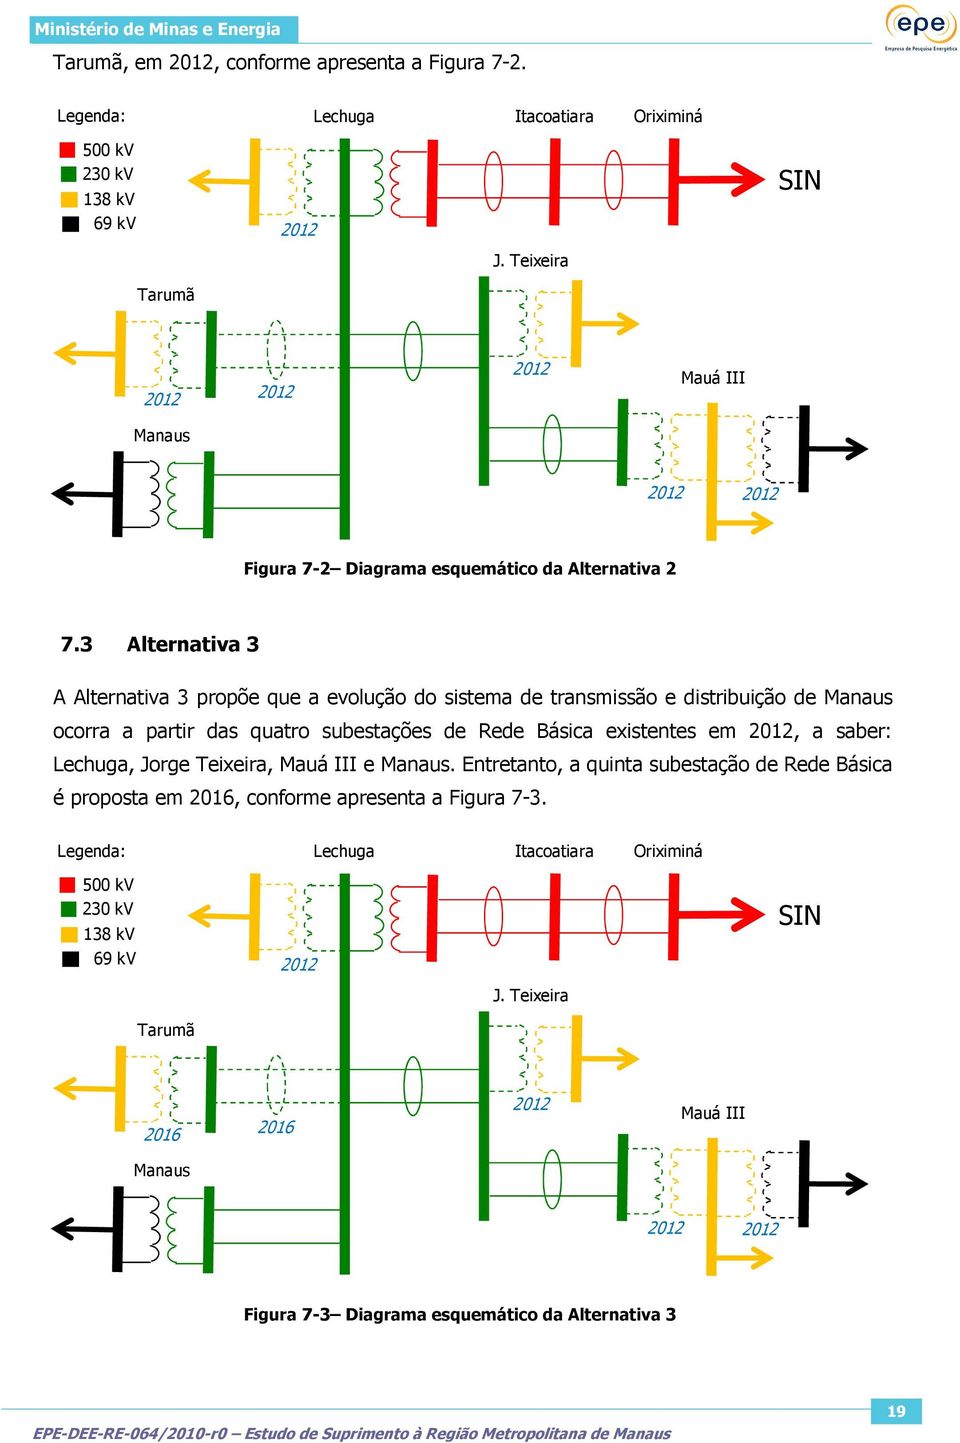 3 Alternativa 3 A Alternativa 3 propõe que a evolução do sistema de transmissão e distribuição de Manaus ocorra a partir das quatro subestações de Rede Básica existentes em 2012, a saber: